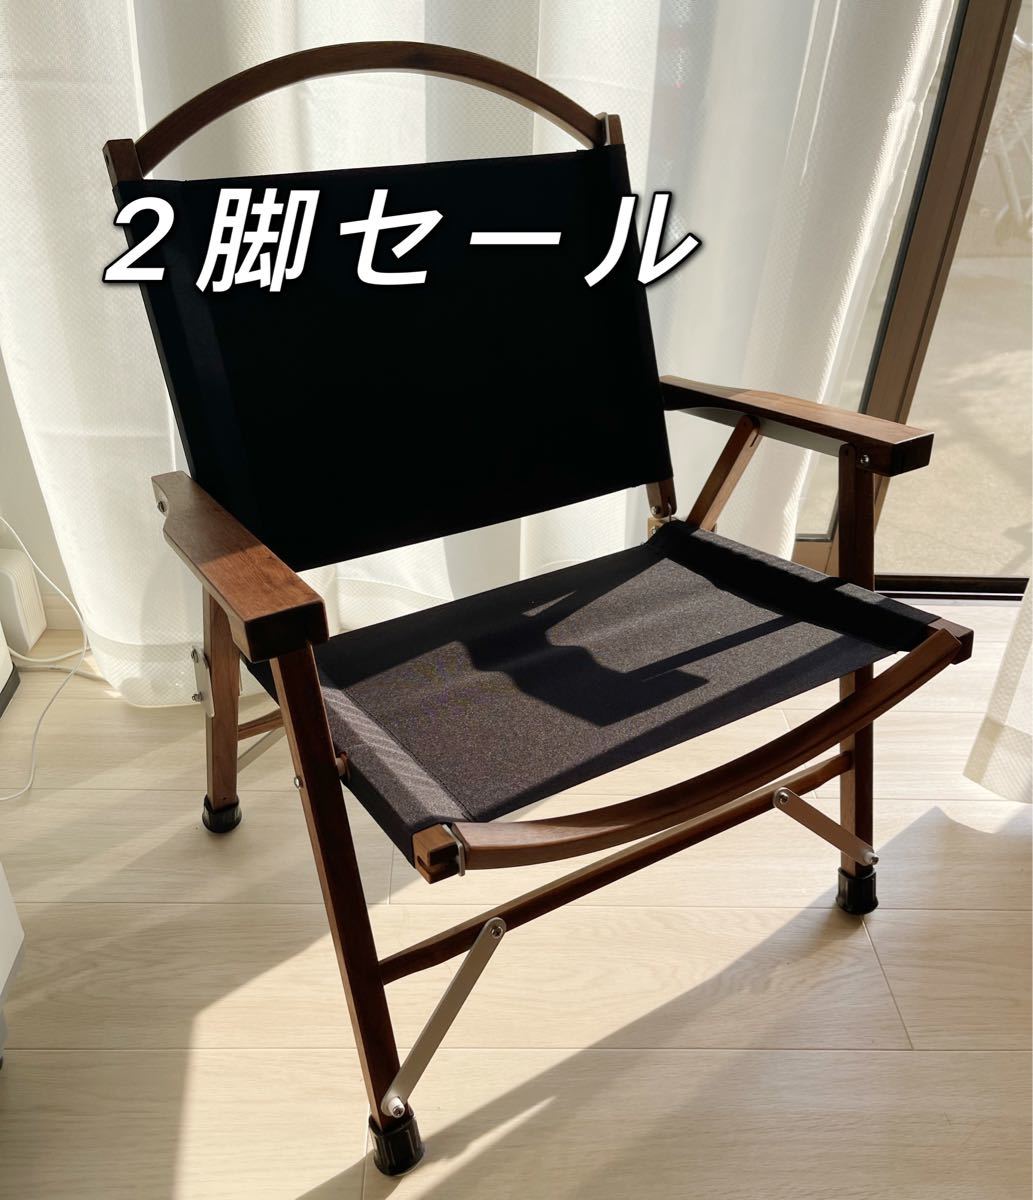 海外お取寄せ商】 【Kermit Chair】ウォールナット ブラック